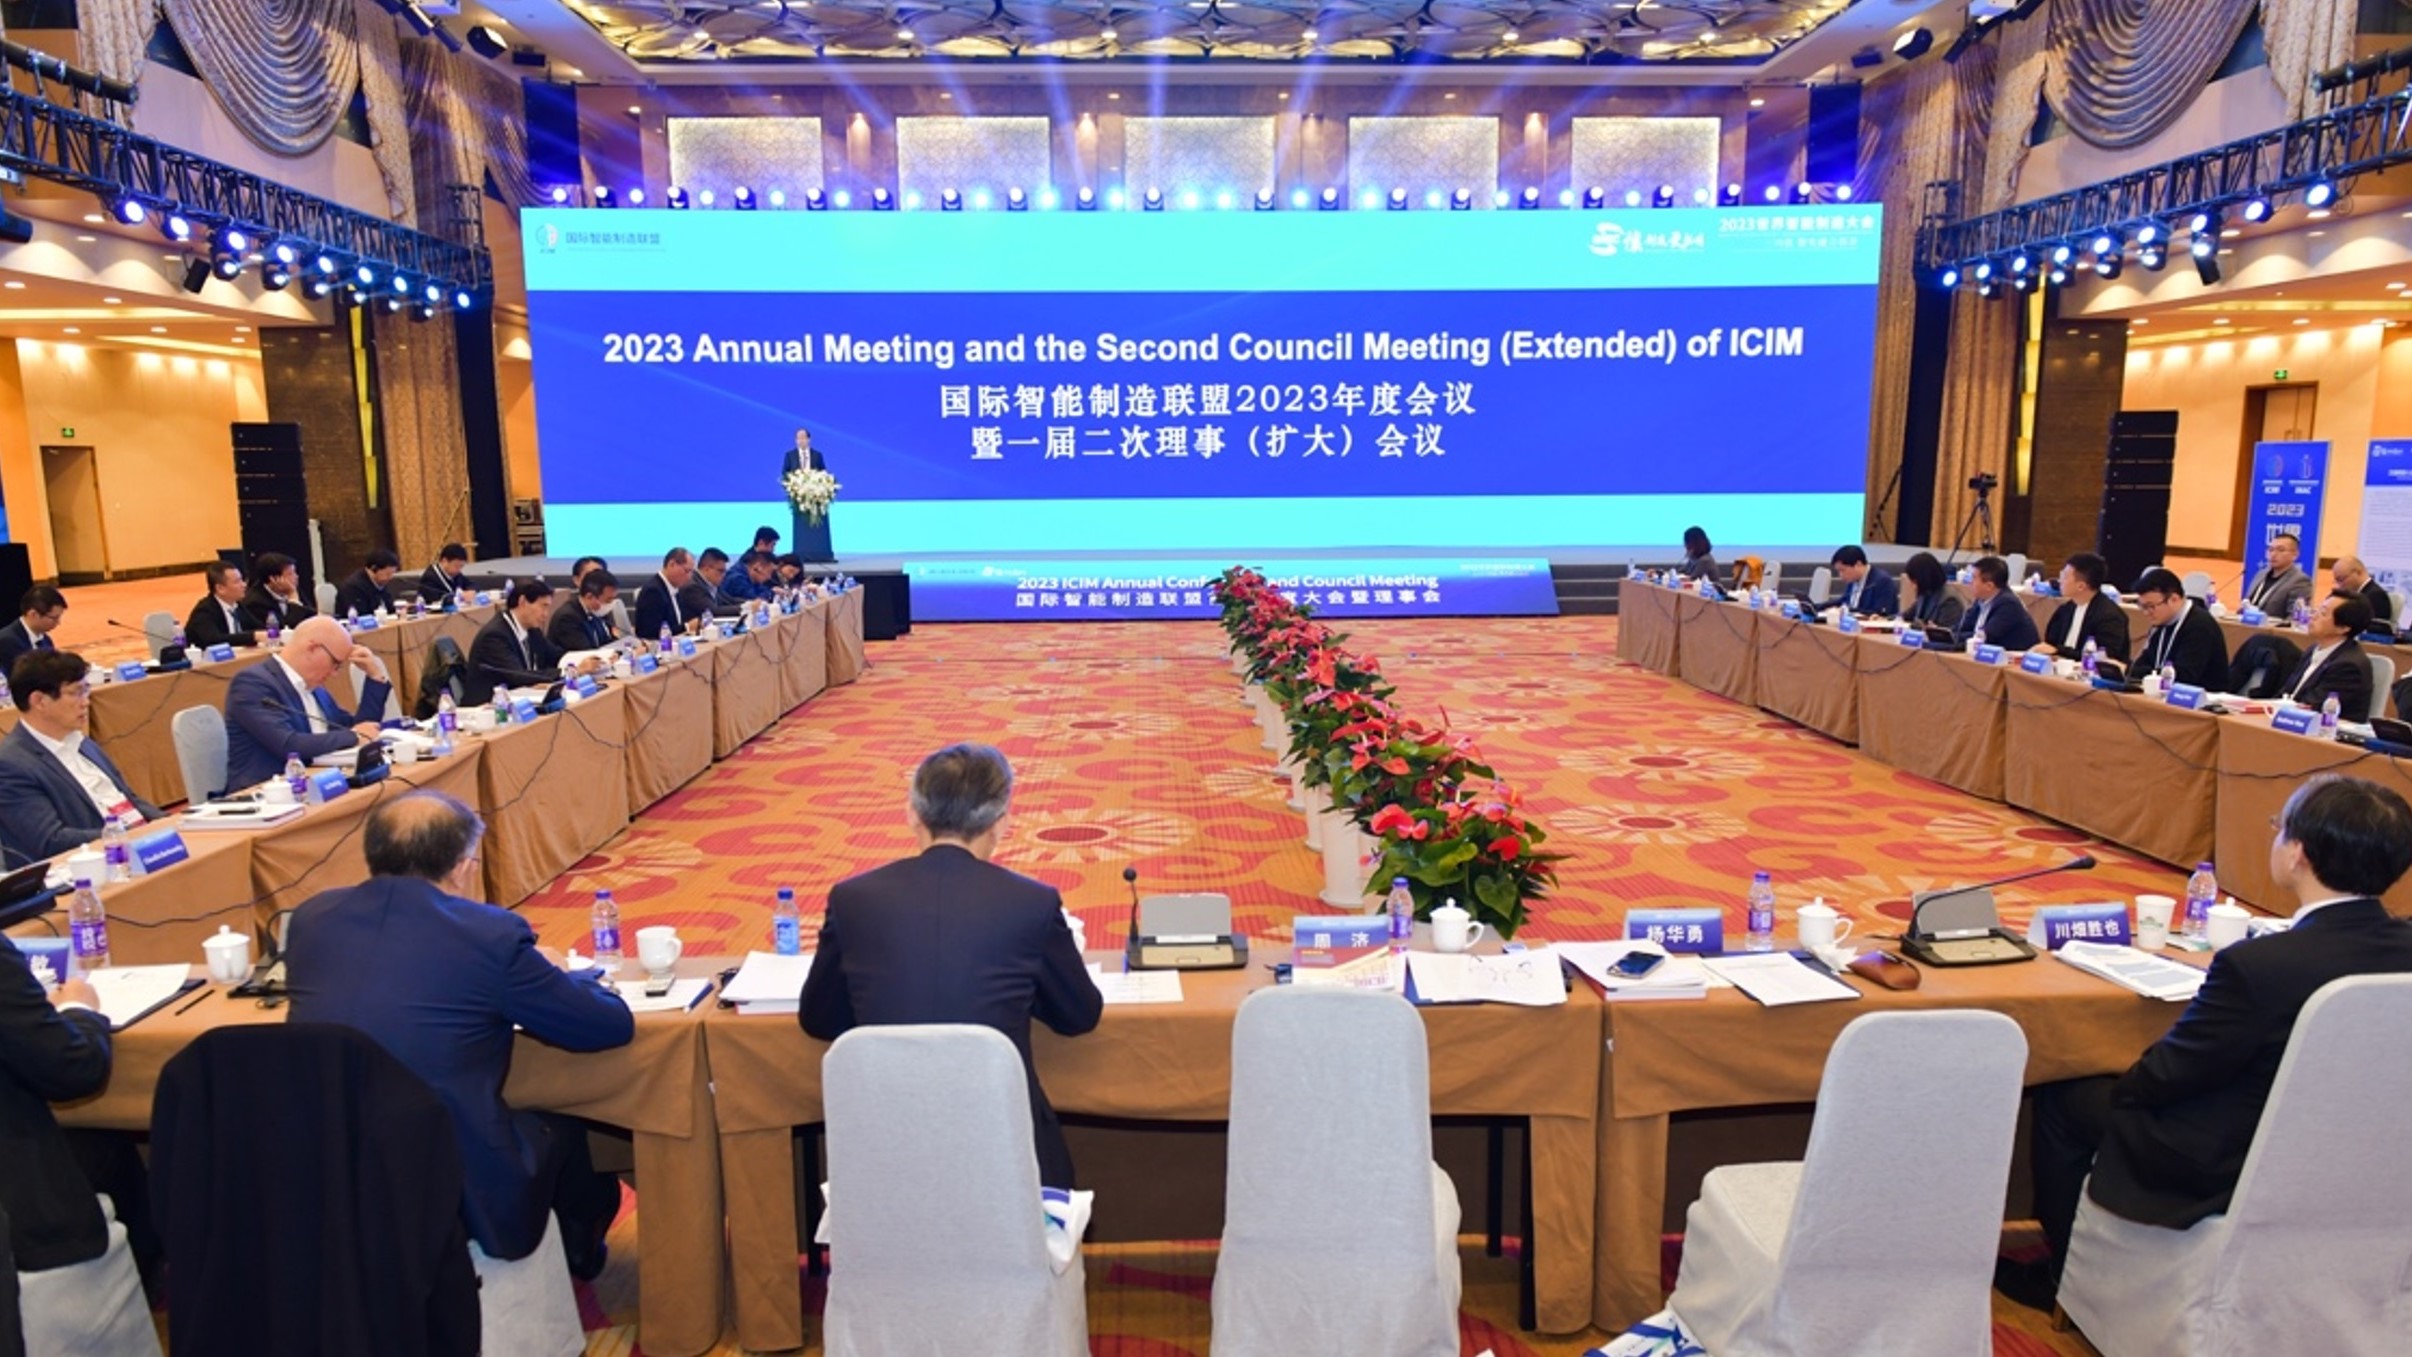 国际智能制造联盟首届年度大会暨理事会在江苏南京召开